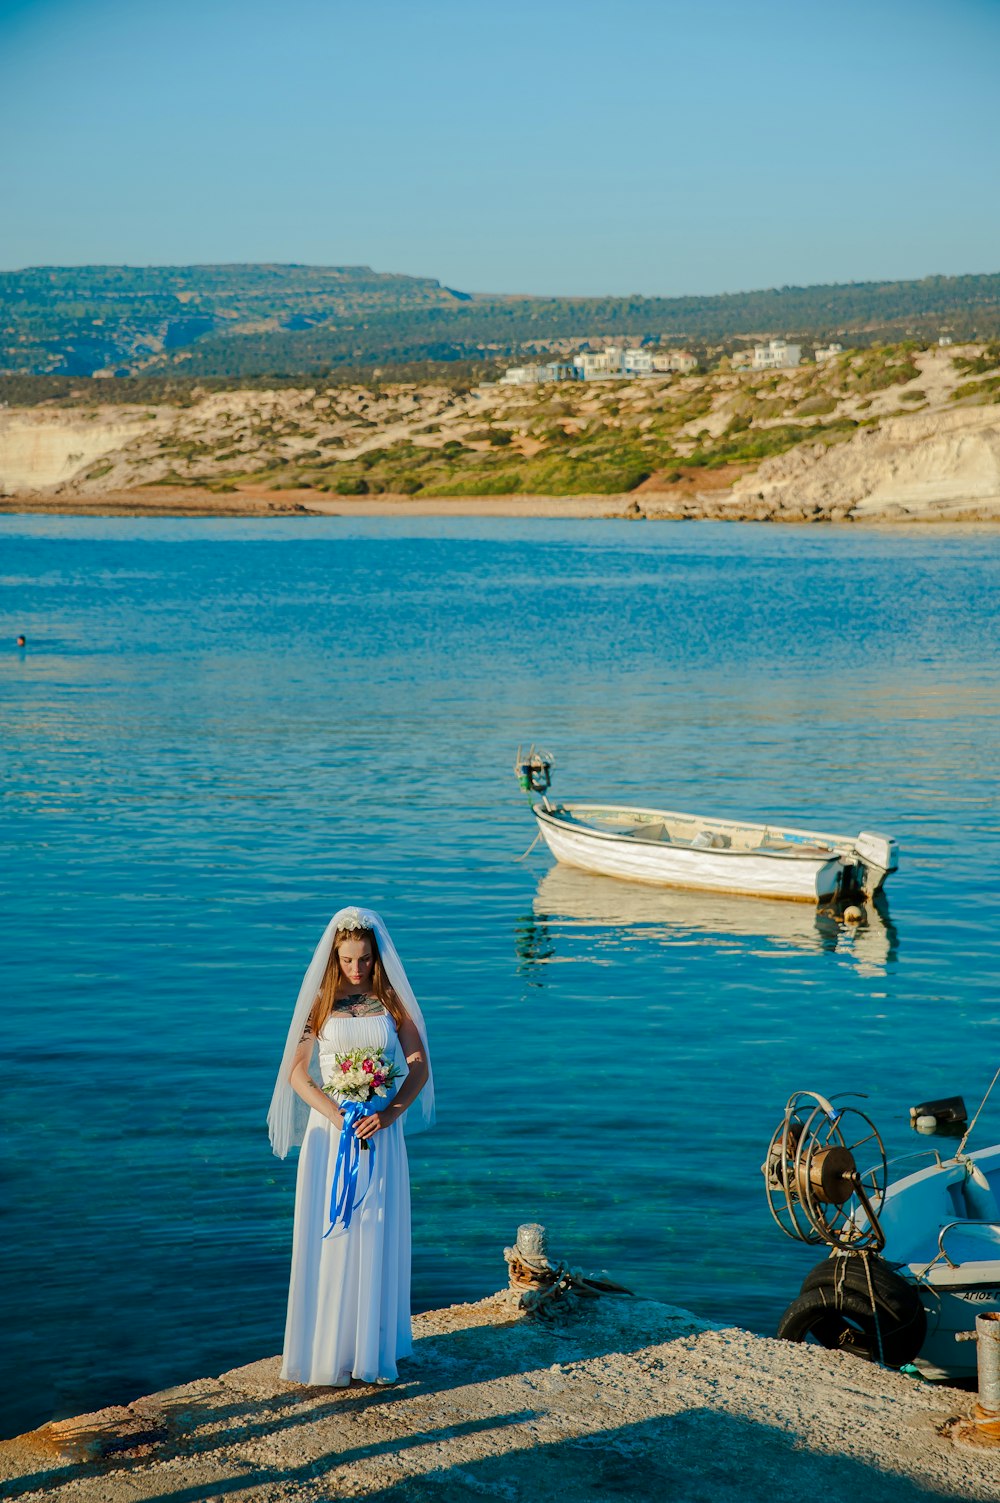 흰 웨딩 드레스를 입고 꽃다발을 들고 수역 근처에 서 있는 여자